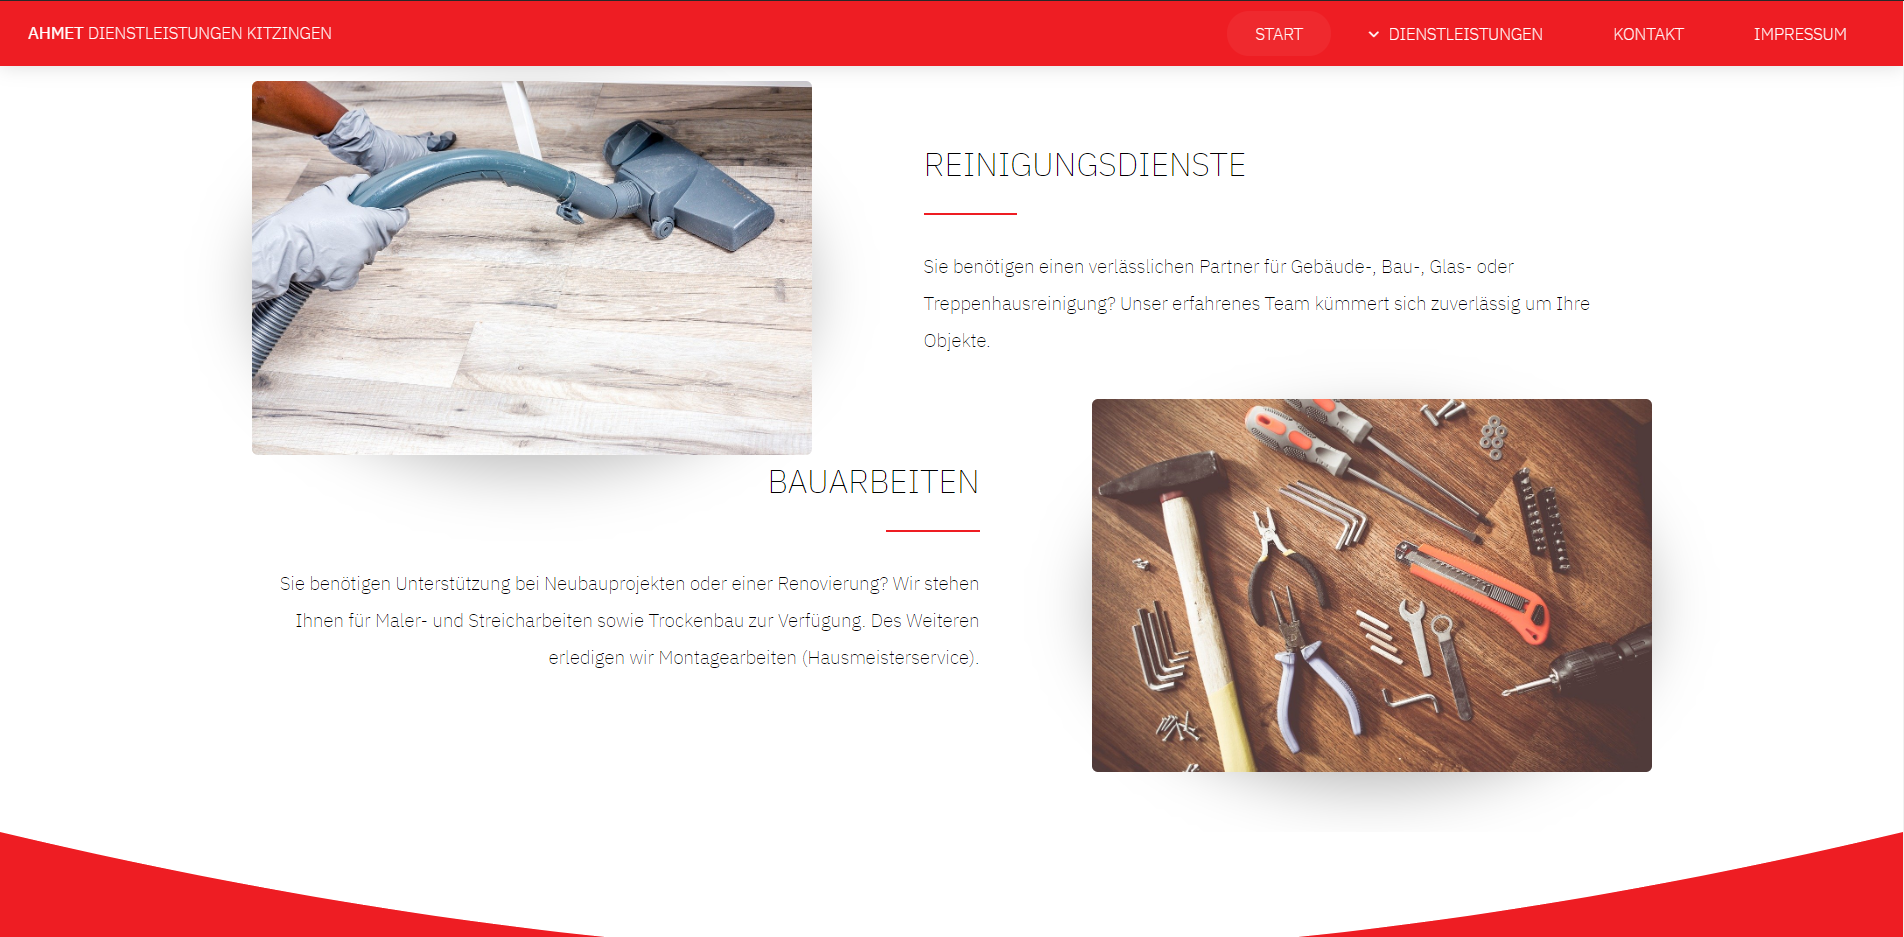 Ahmed-Dienstleistungen-Kitzingen-Portfolio